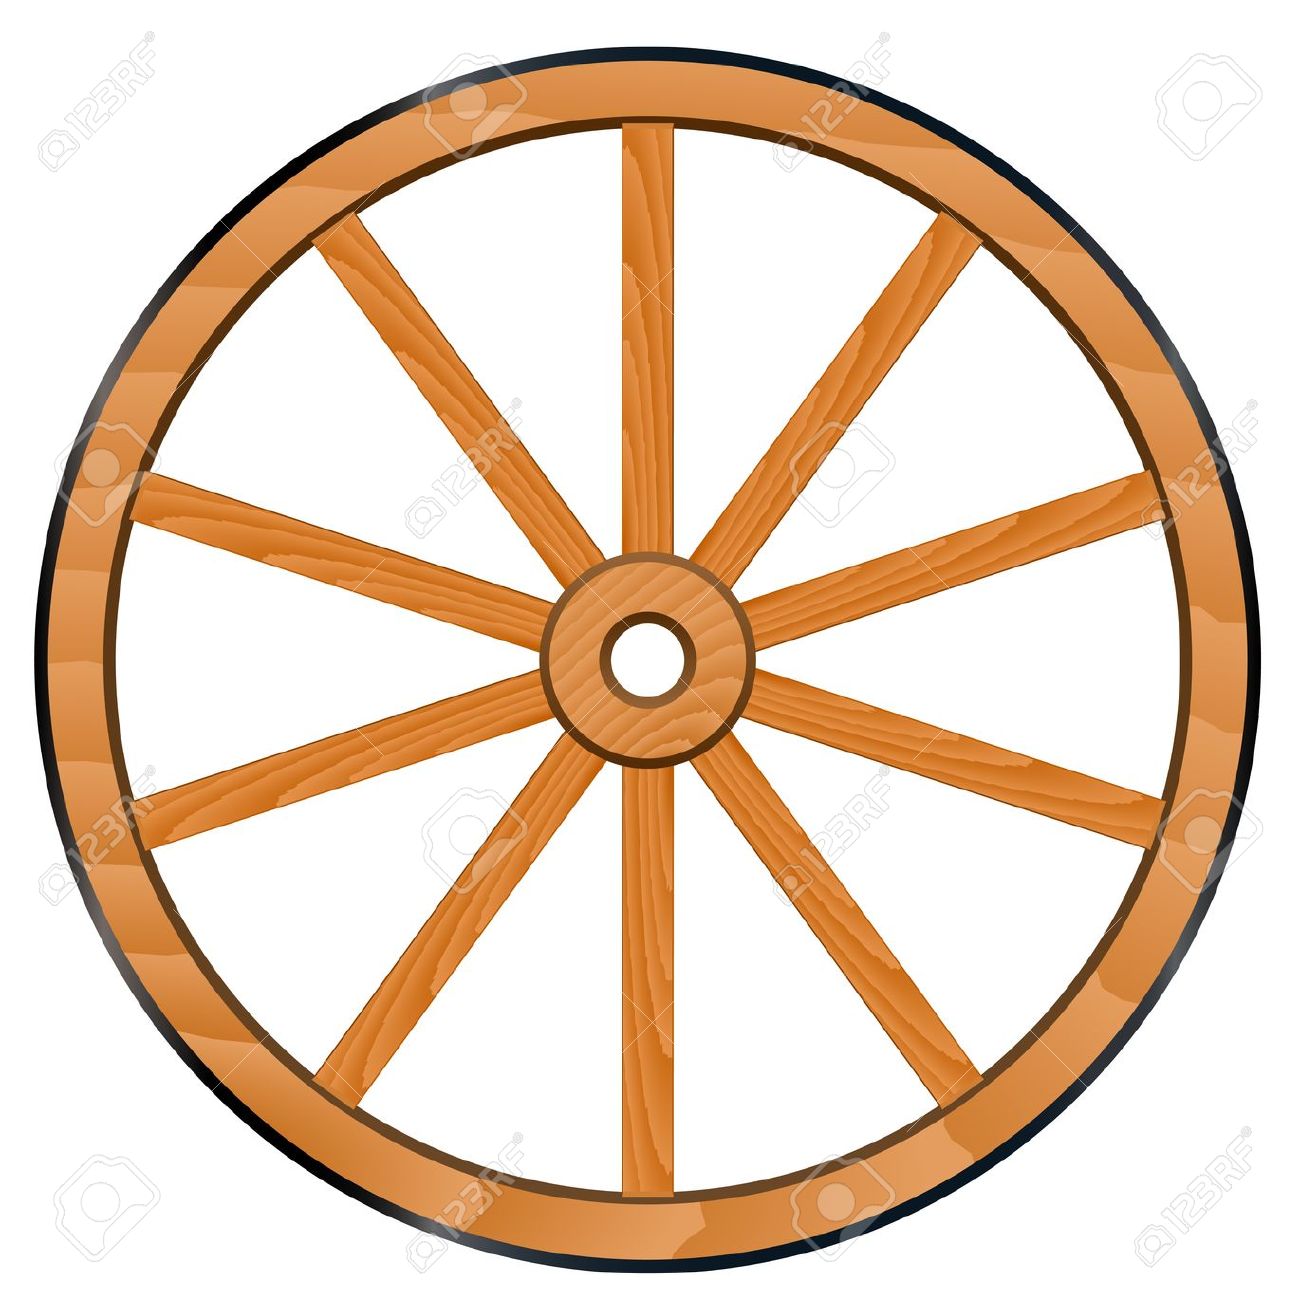 wagon wheel: vector old Wooden .